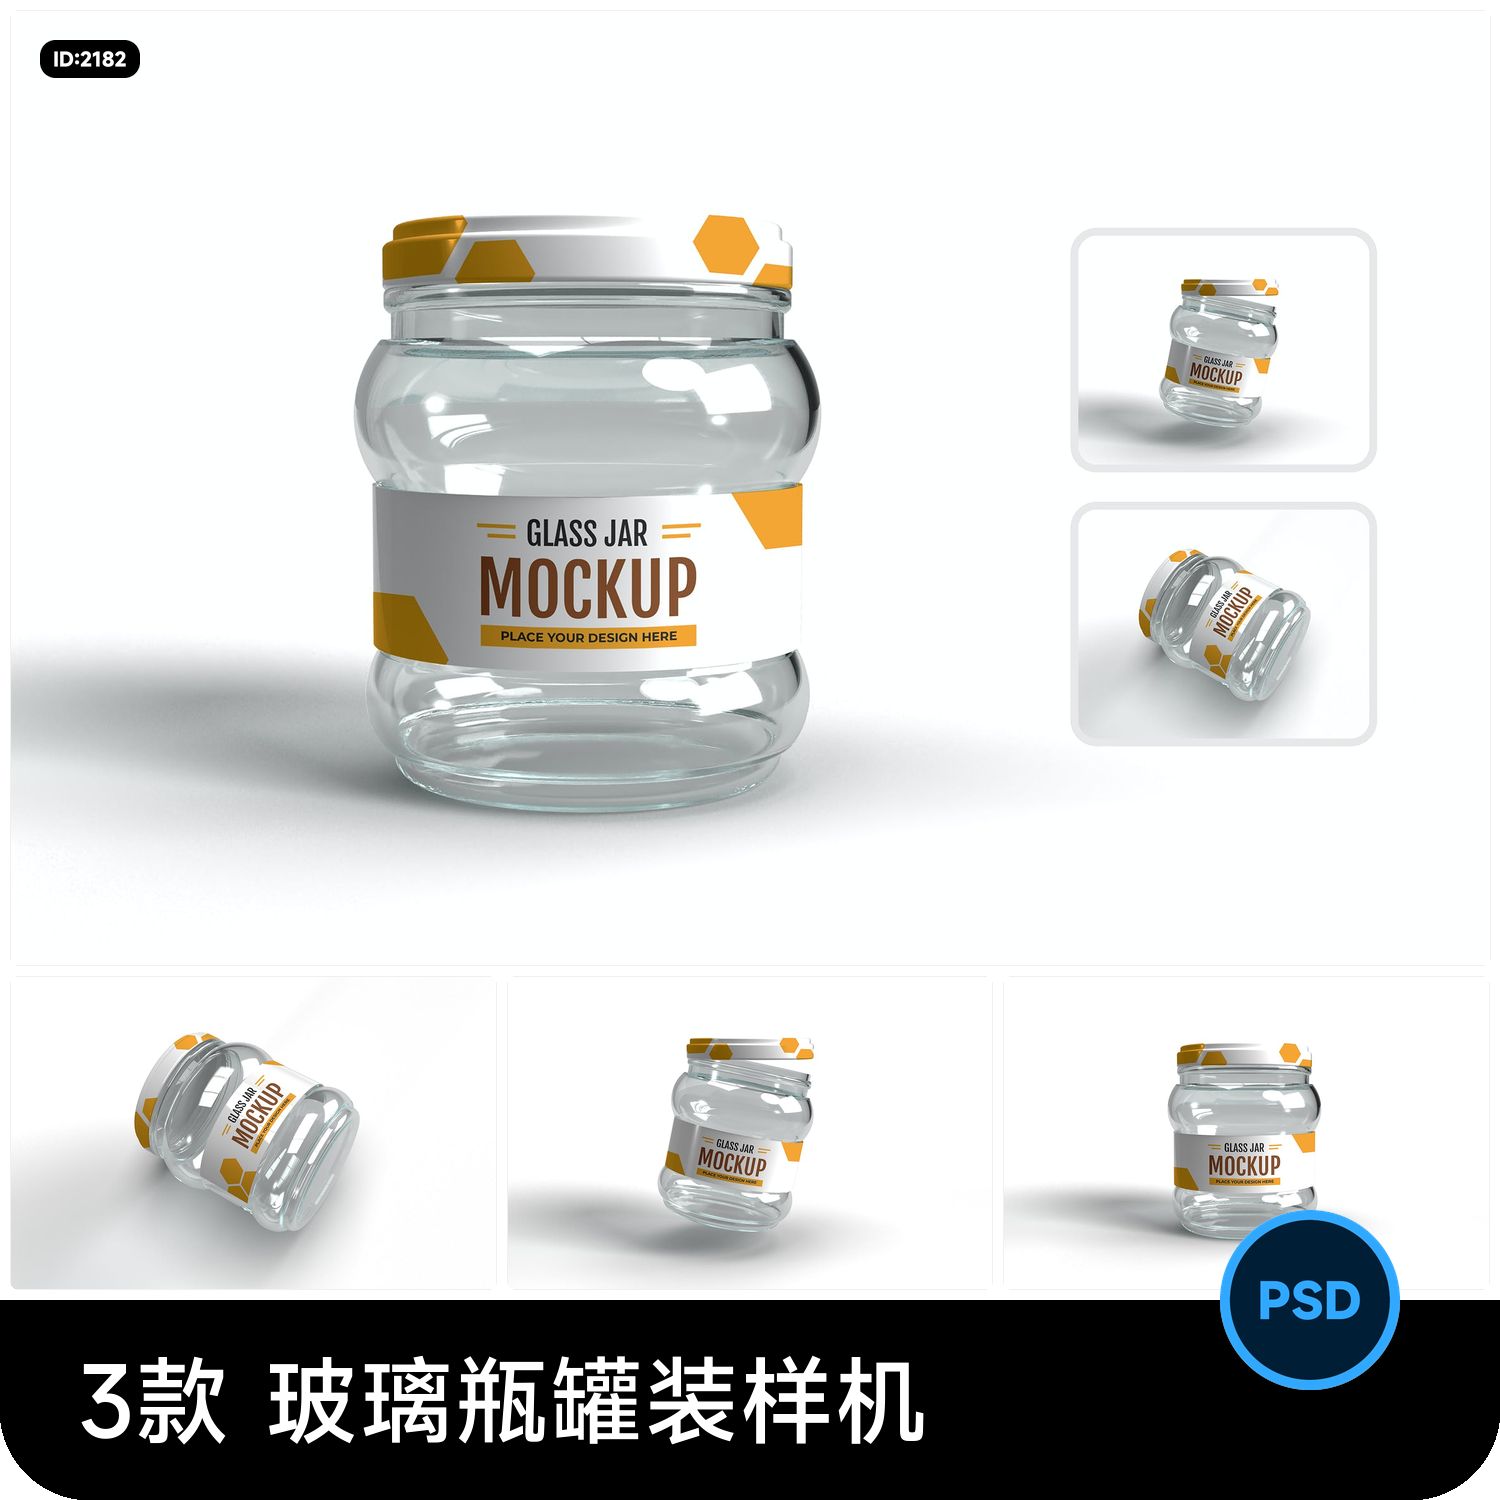 辣椒酱果酱玻璃瓶罐装logo包装设计VI效果图智能贴图样机PSD素材